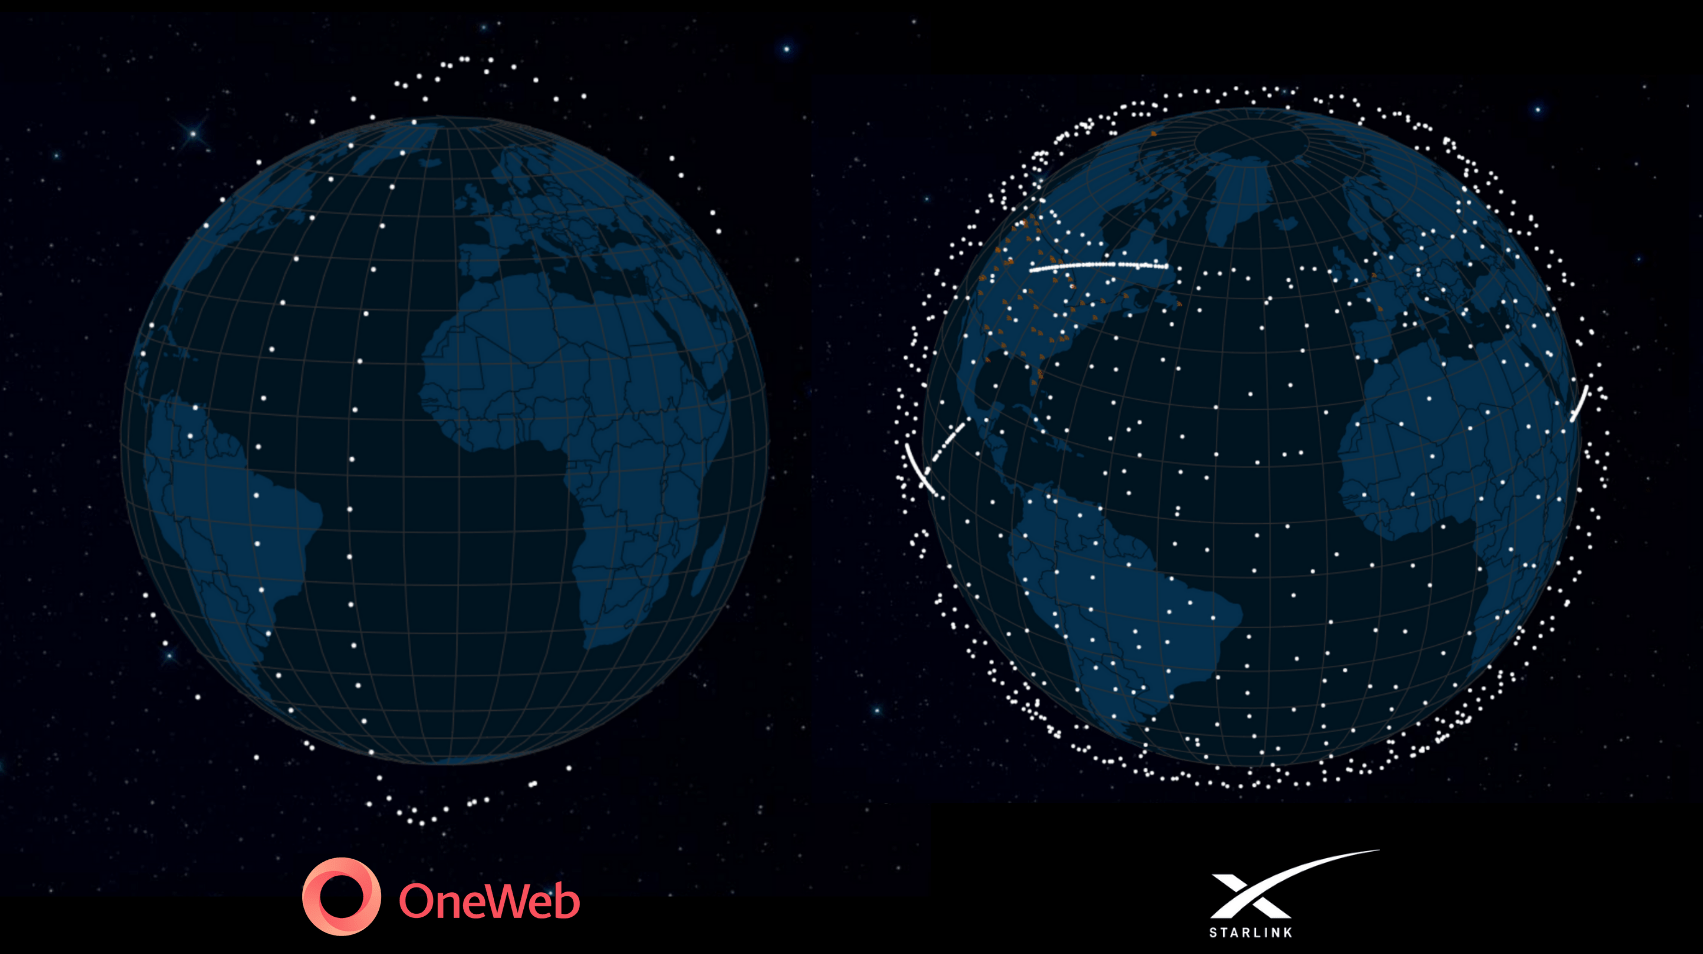 Le costellazioni Starlink e OneWeb aggiornate aal 15 marzo 2021.